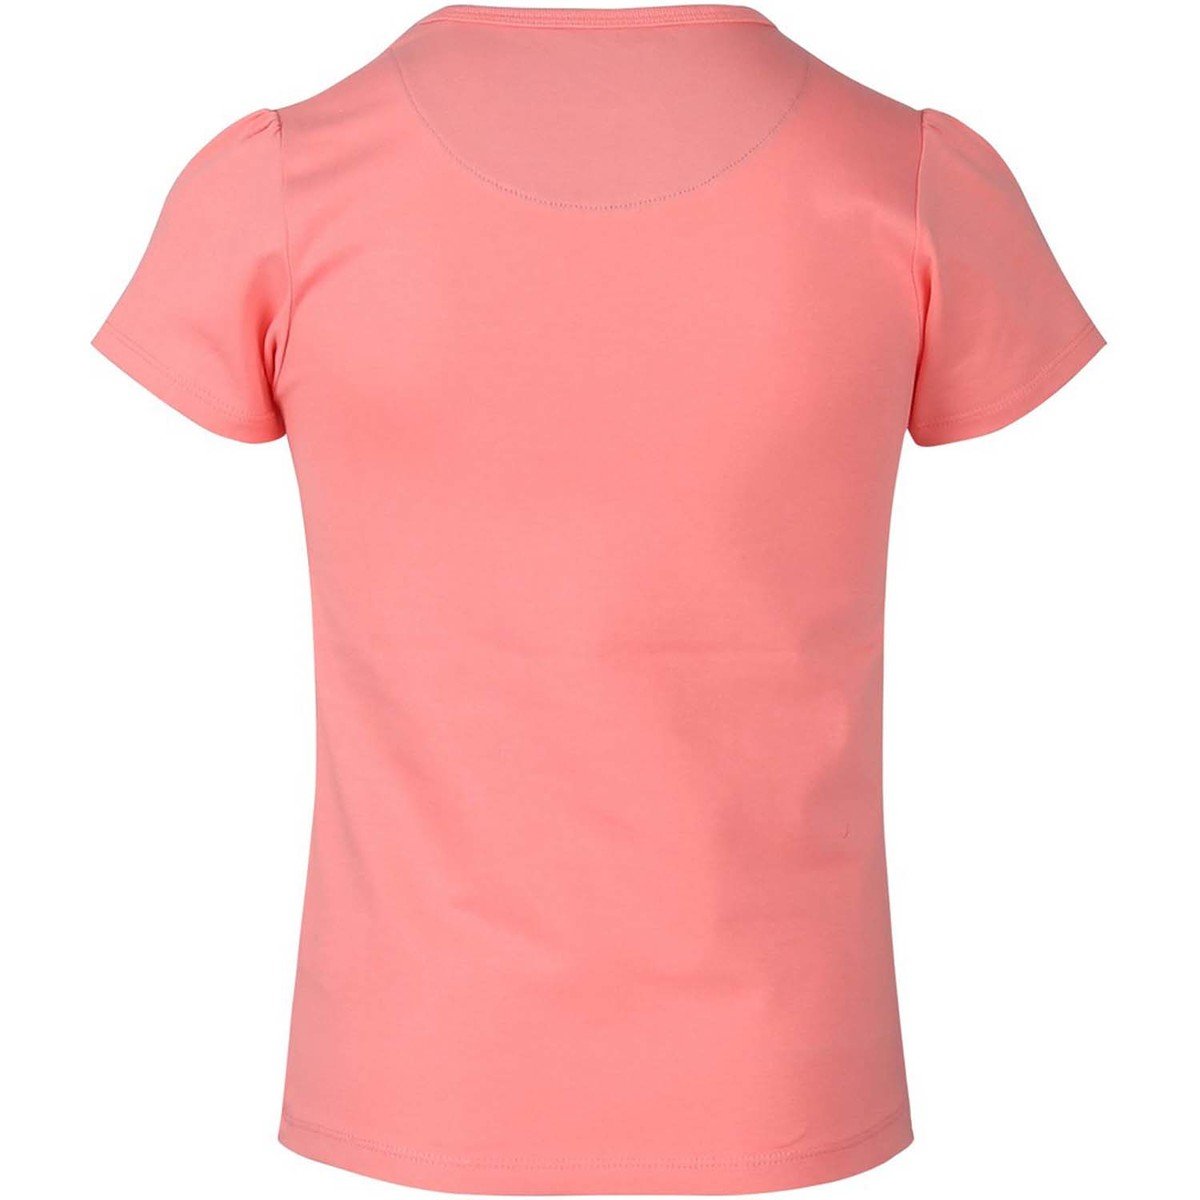 قم بشراء Eten Girls Basic Round Neck Short Sleeve Salmon Rose 9 16 Y Online At Best Price من